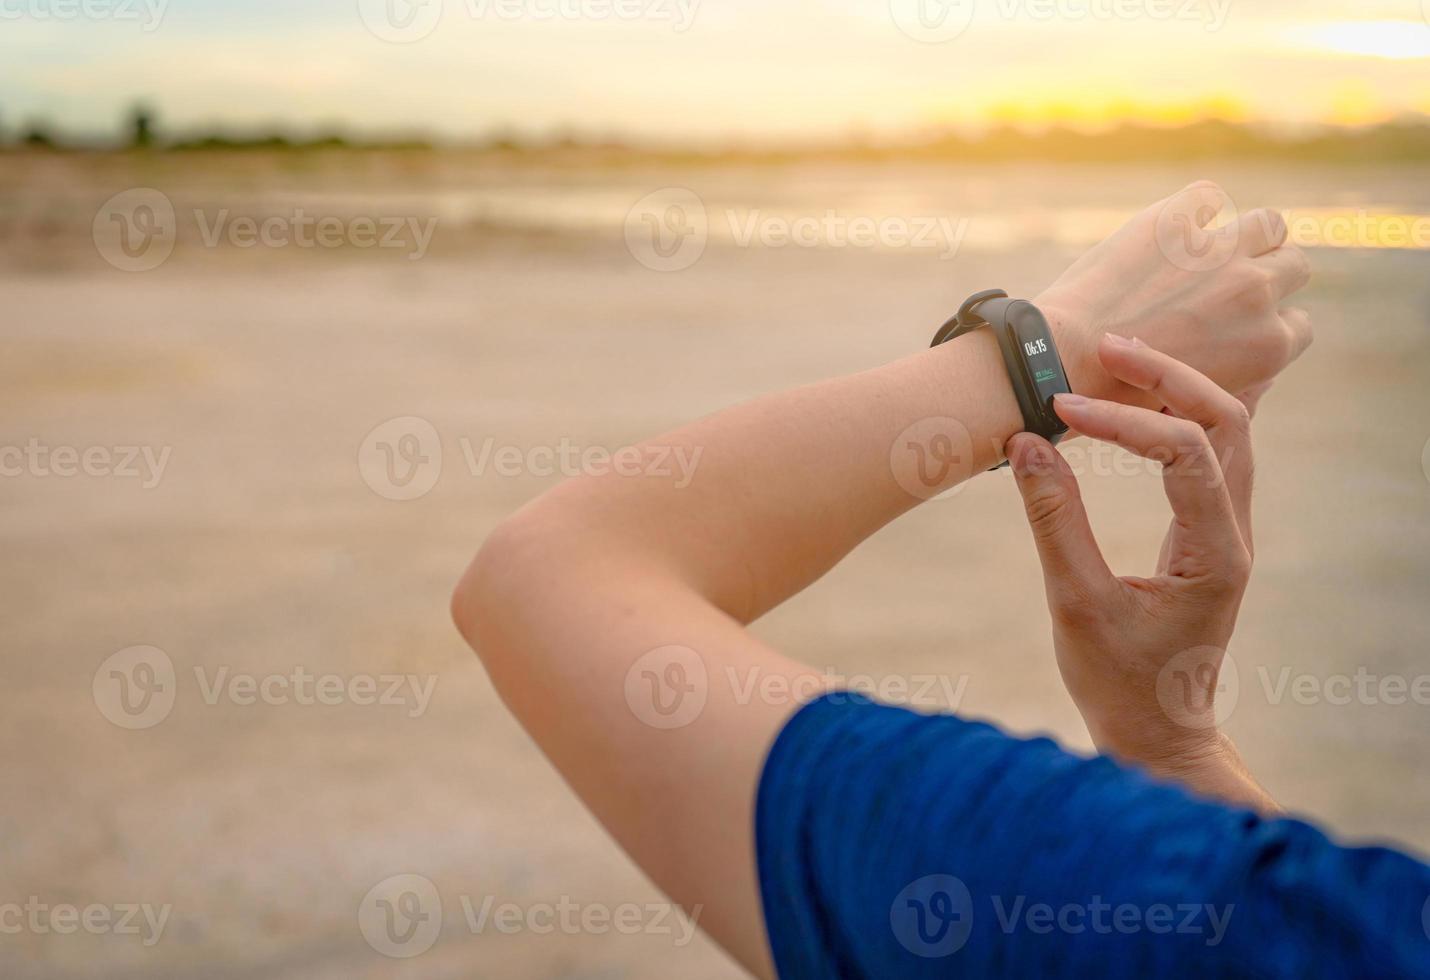 jeune femme asiatique touchant une bande intelligente après avoir couru le matin. ordinateur portable. bracelet cardiofréquencemètre. appareil de remise en forme. tracker d'activité ou de fitness. appareil connecté à une montre intelligente. bracelet photo